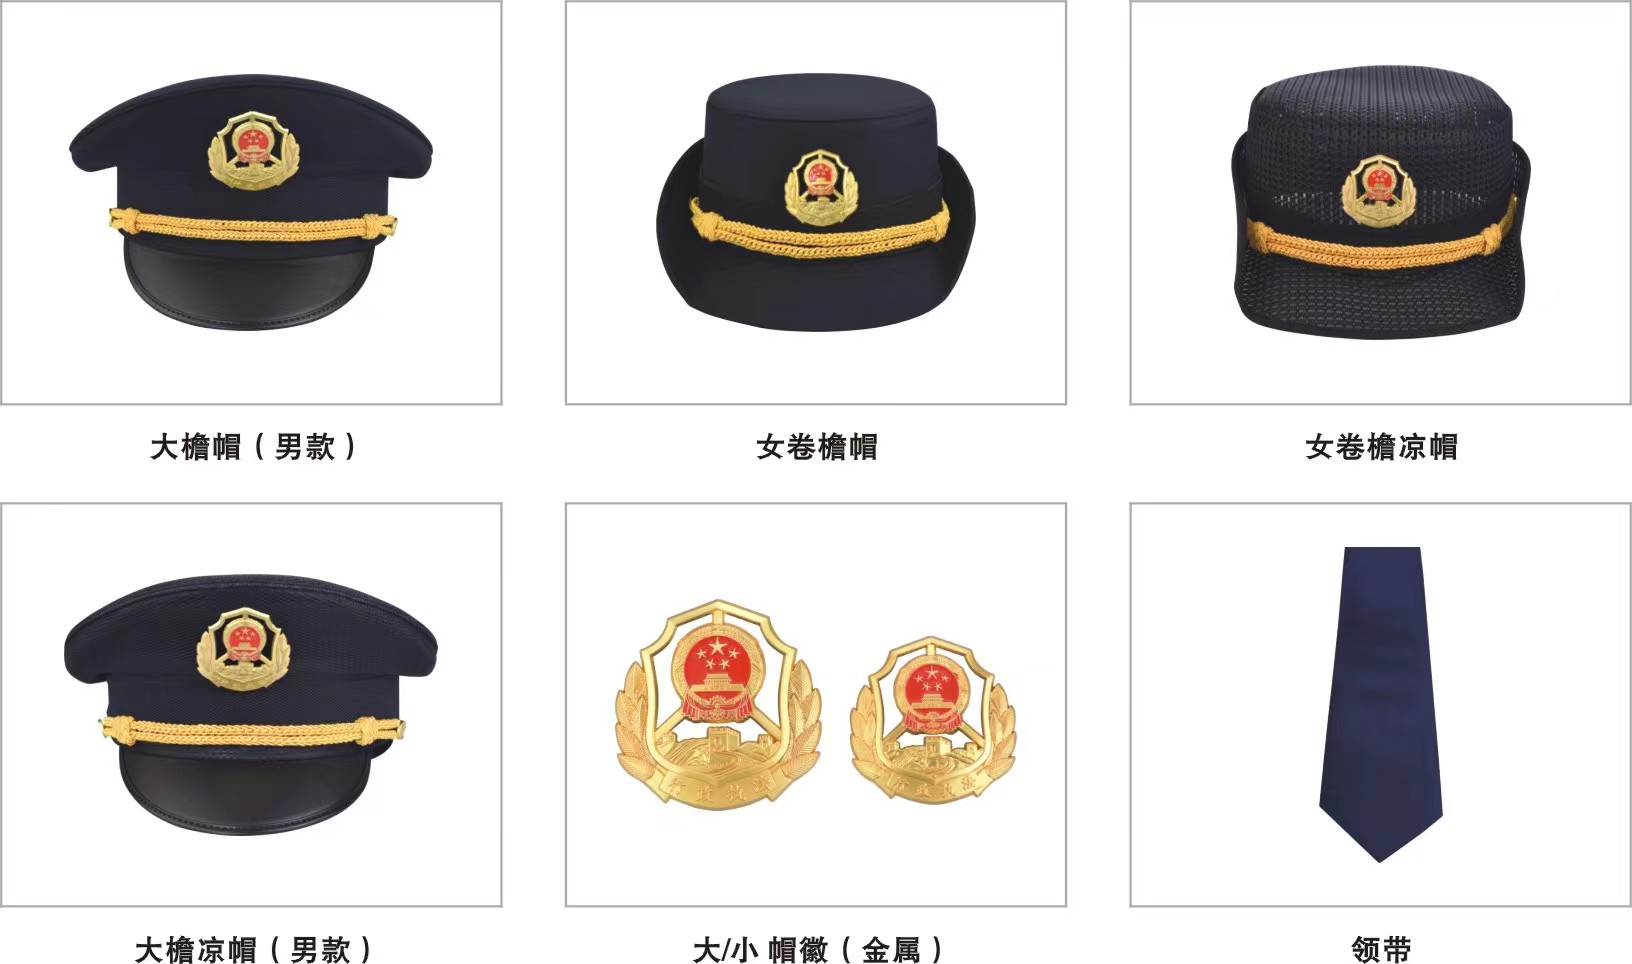 新六部门统一综合执法帽子及徽章